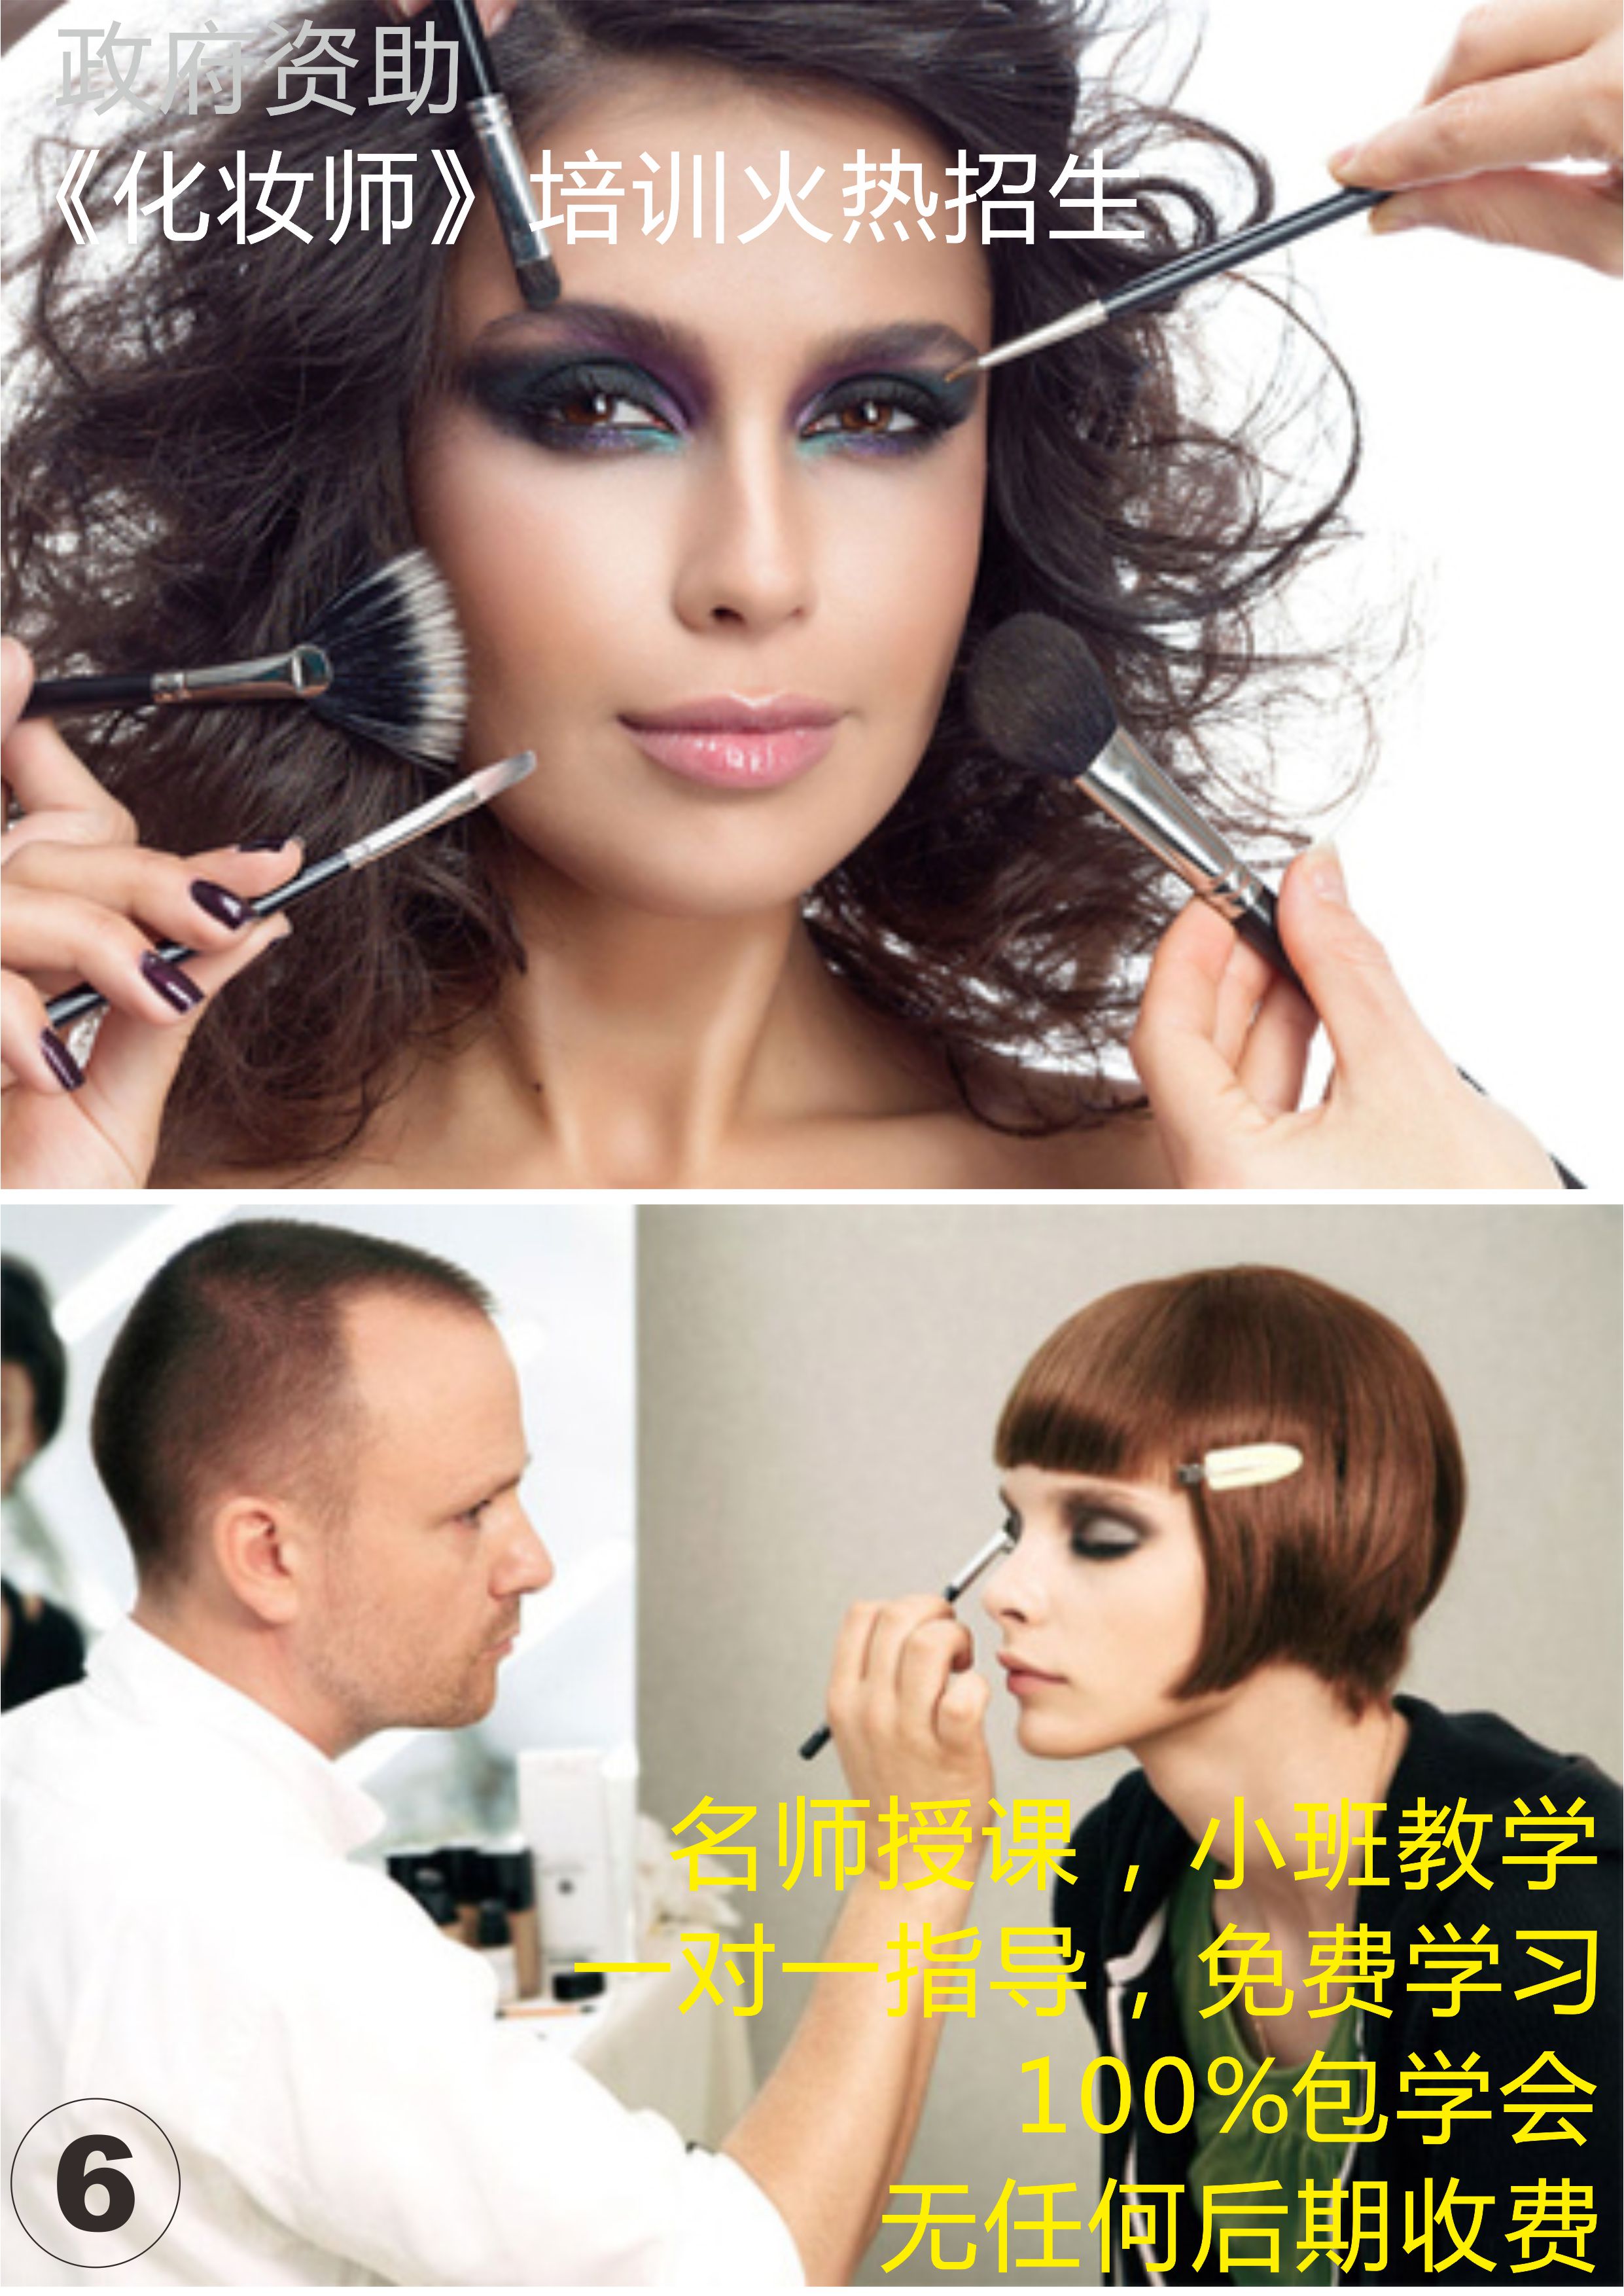 广州化妆师资格证 广州化妆师资格证培训学校 广州化妆师资格证培训